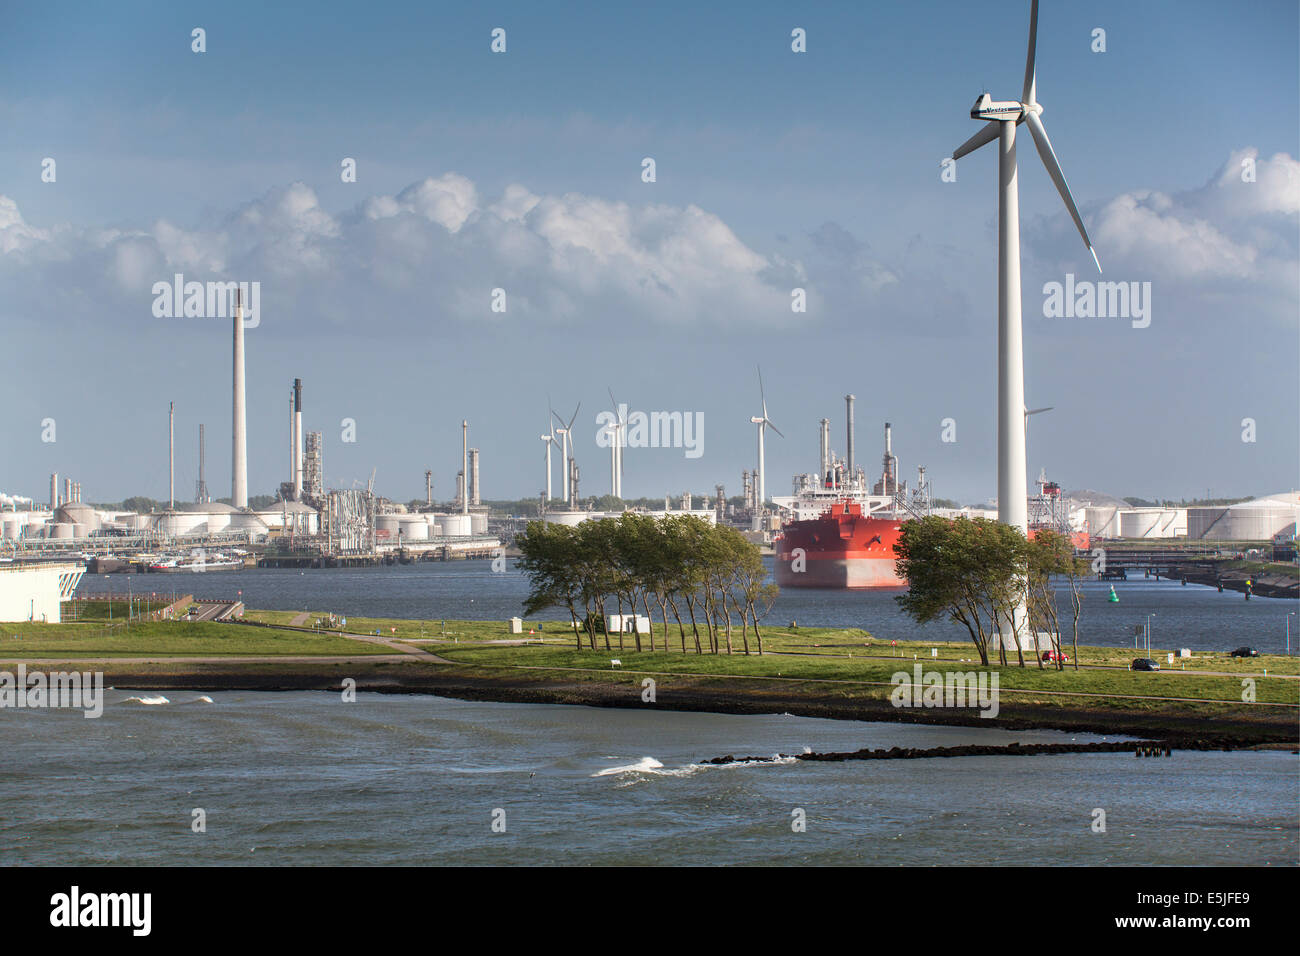 Pays-bas, Rotterdam, Port de Rotterdam. Port ou port. Stockage de l'huile et l'industrie pétrochimique Industrie chimique. Éoliennes Banque D'Images